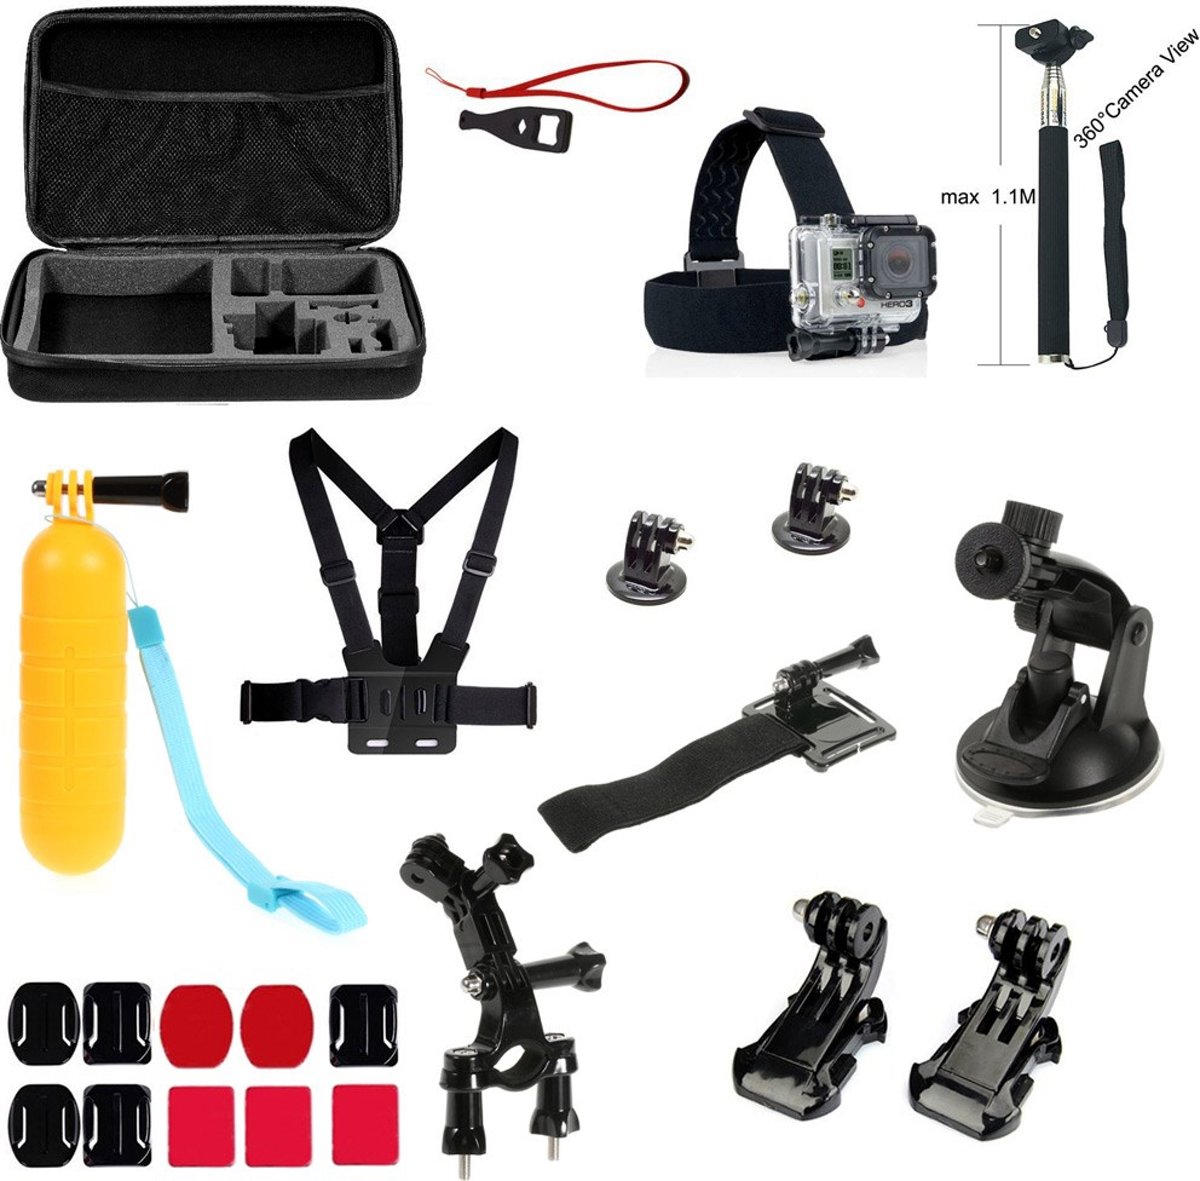 15-in-1 Accessories Kit voor Gopro Hero 1 2 3 3+ 4 en Actioncam